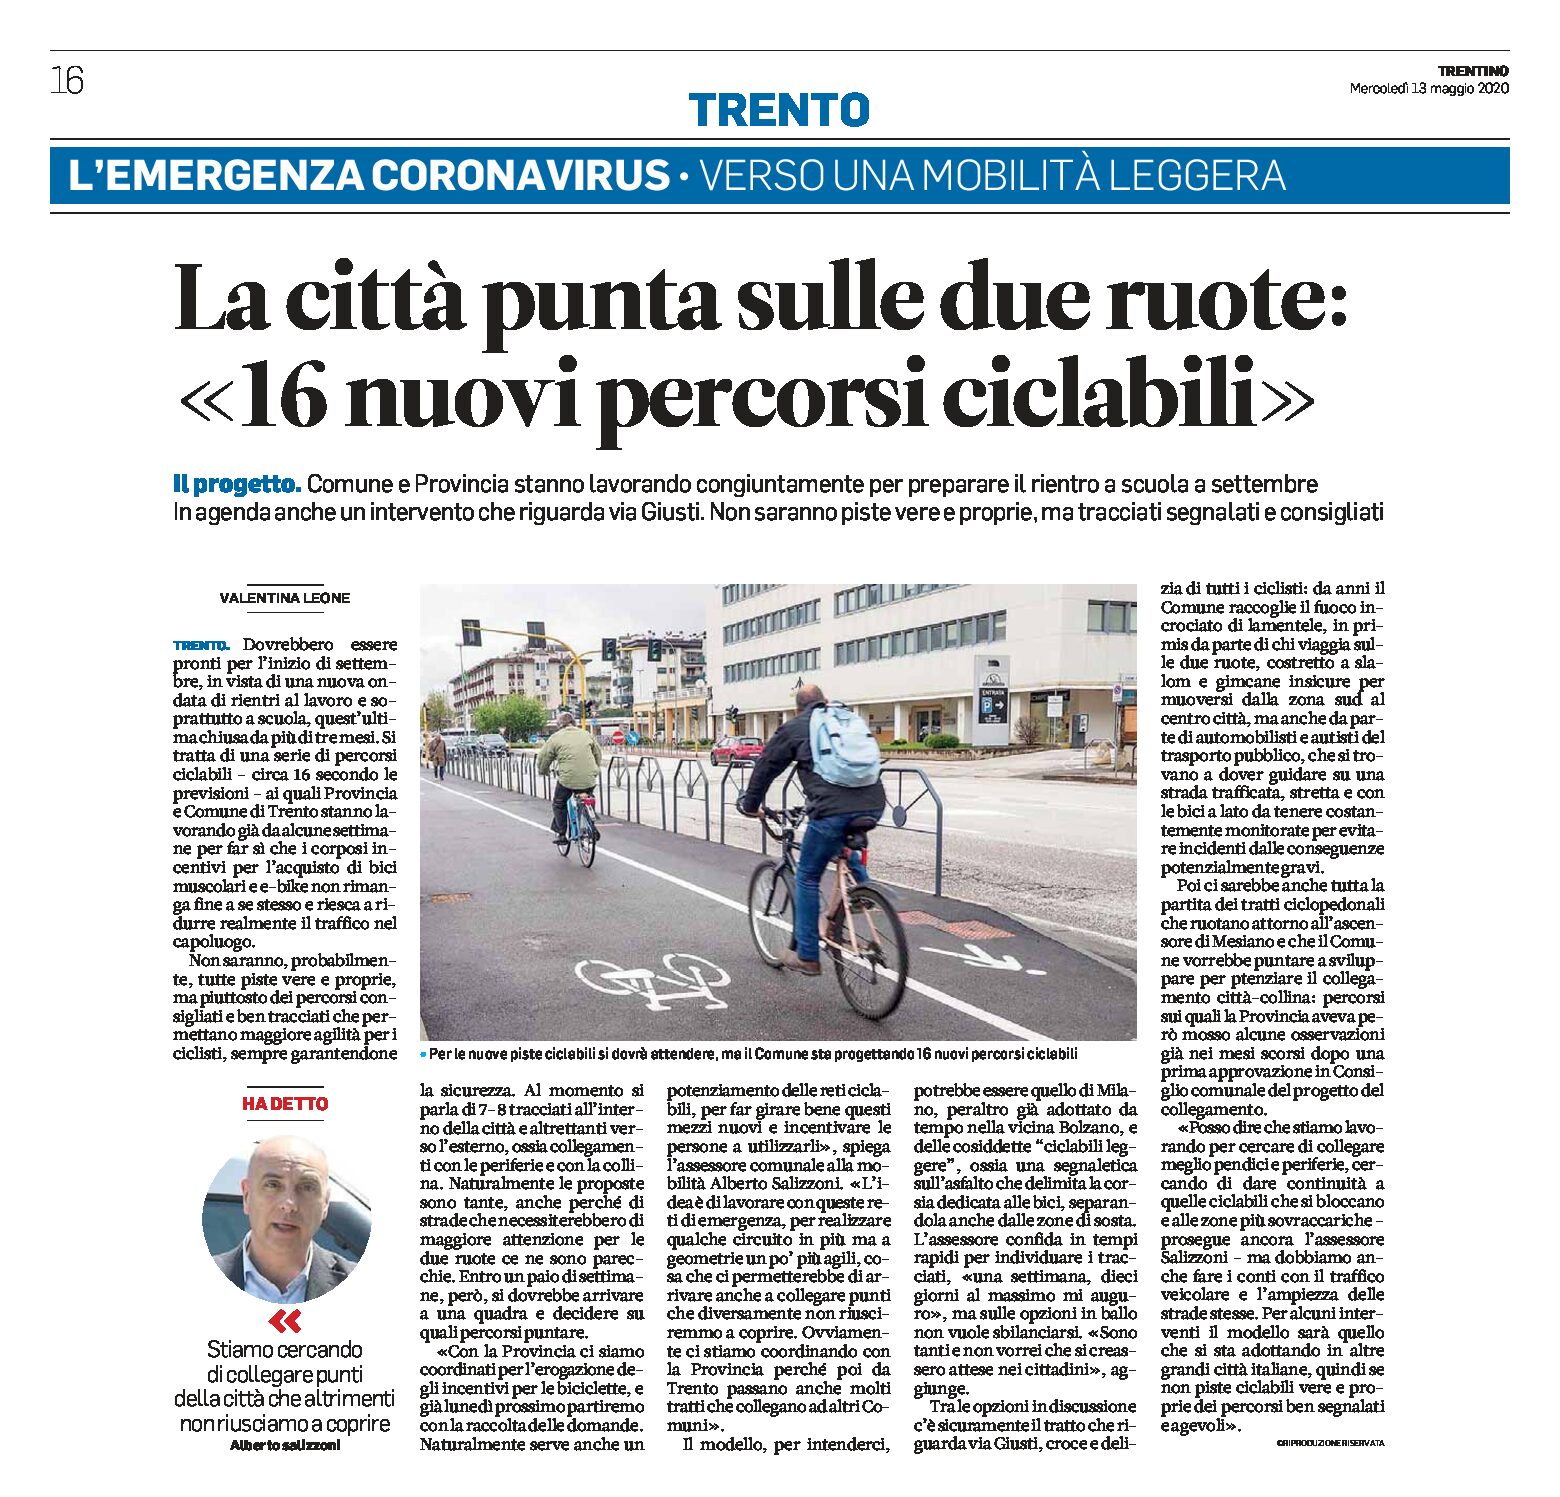 Trento: la città punta sulle due ruote con 16 nuovi percorsi ciclabili